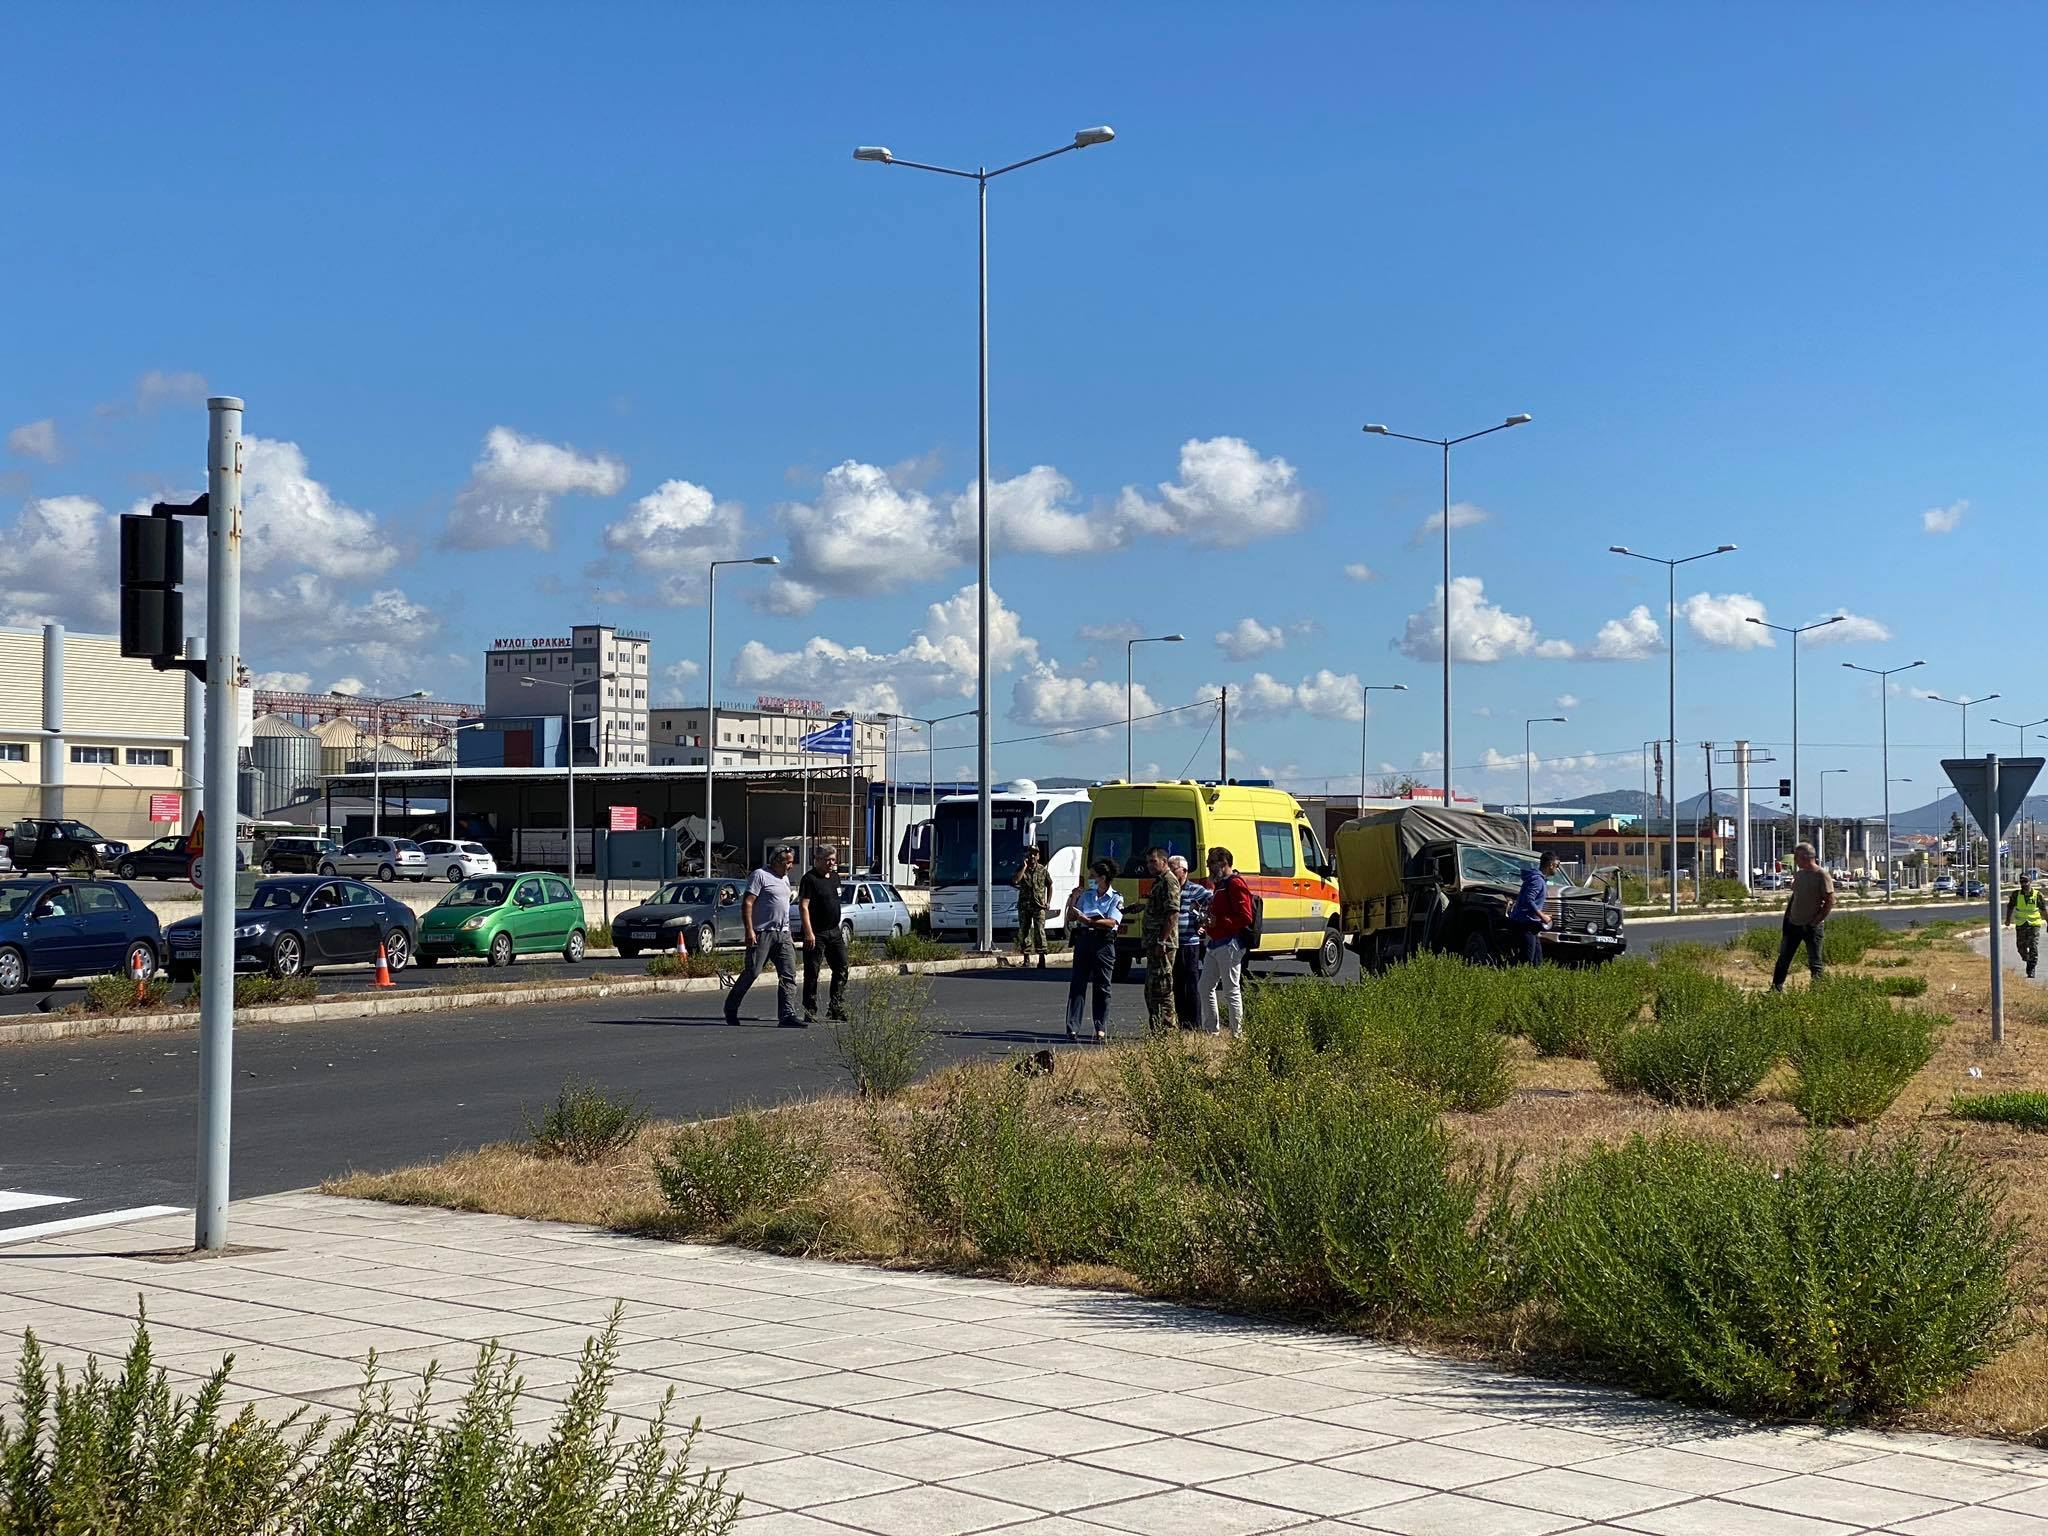 Αναζητούνται αυτόπτες μάρτυρες για το τροχαίο με το στρατιωτικό όχημα στην Αλεξανδρούπολη (video)